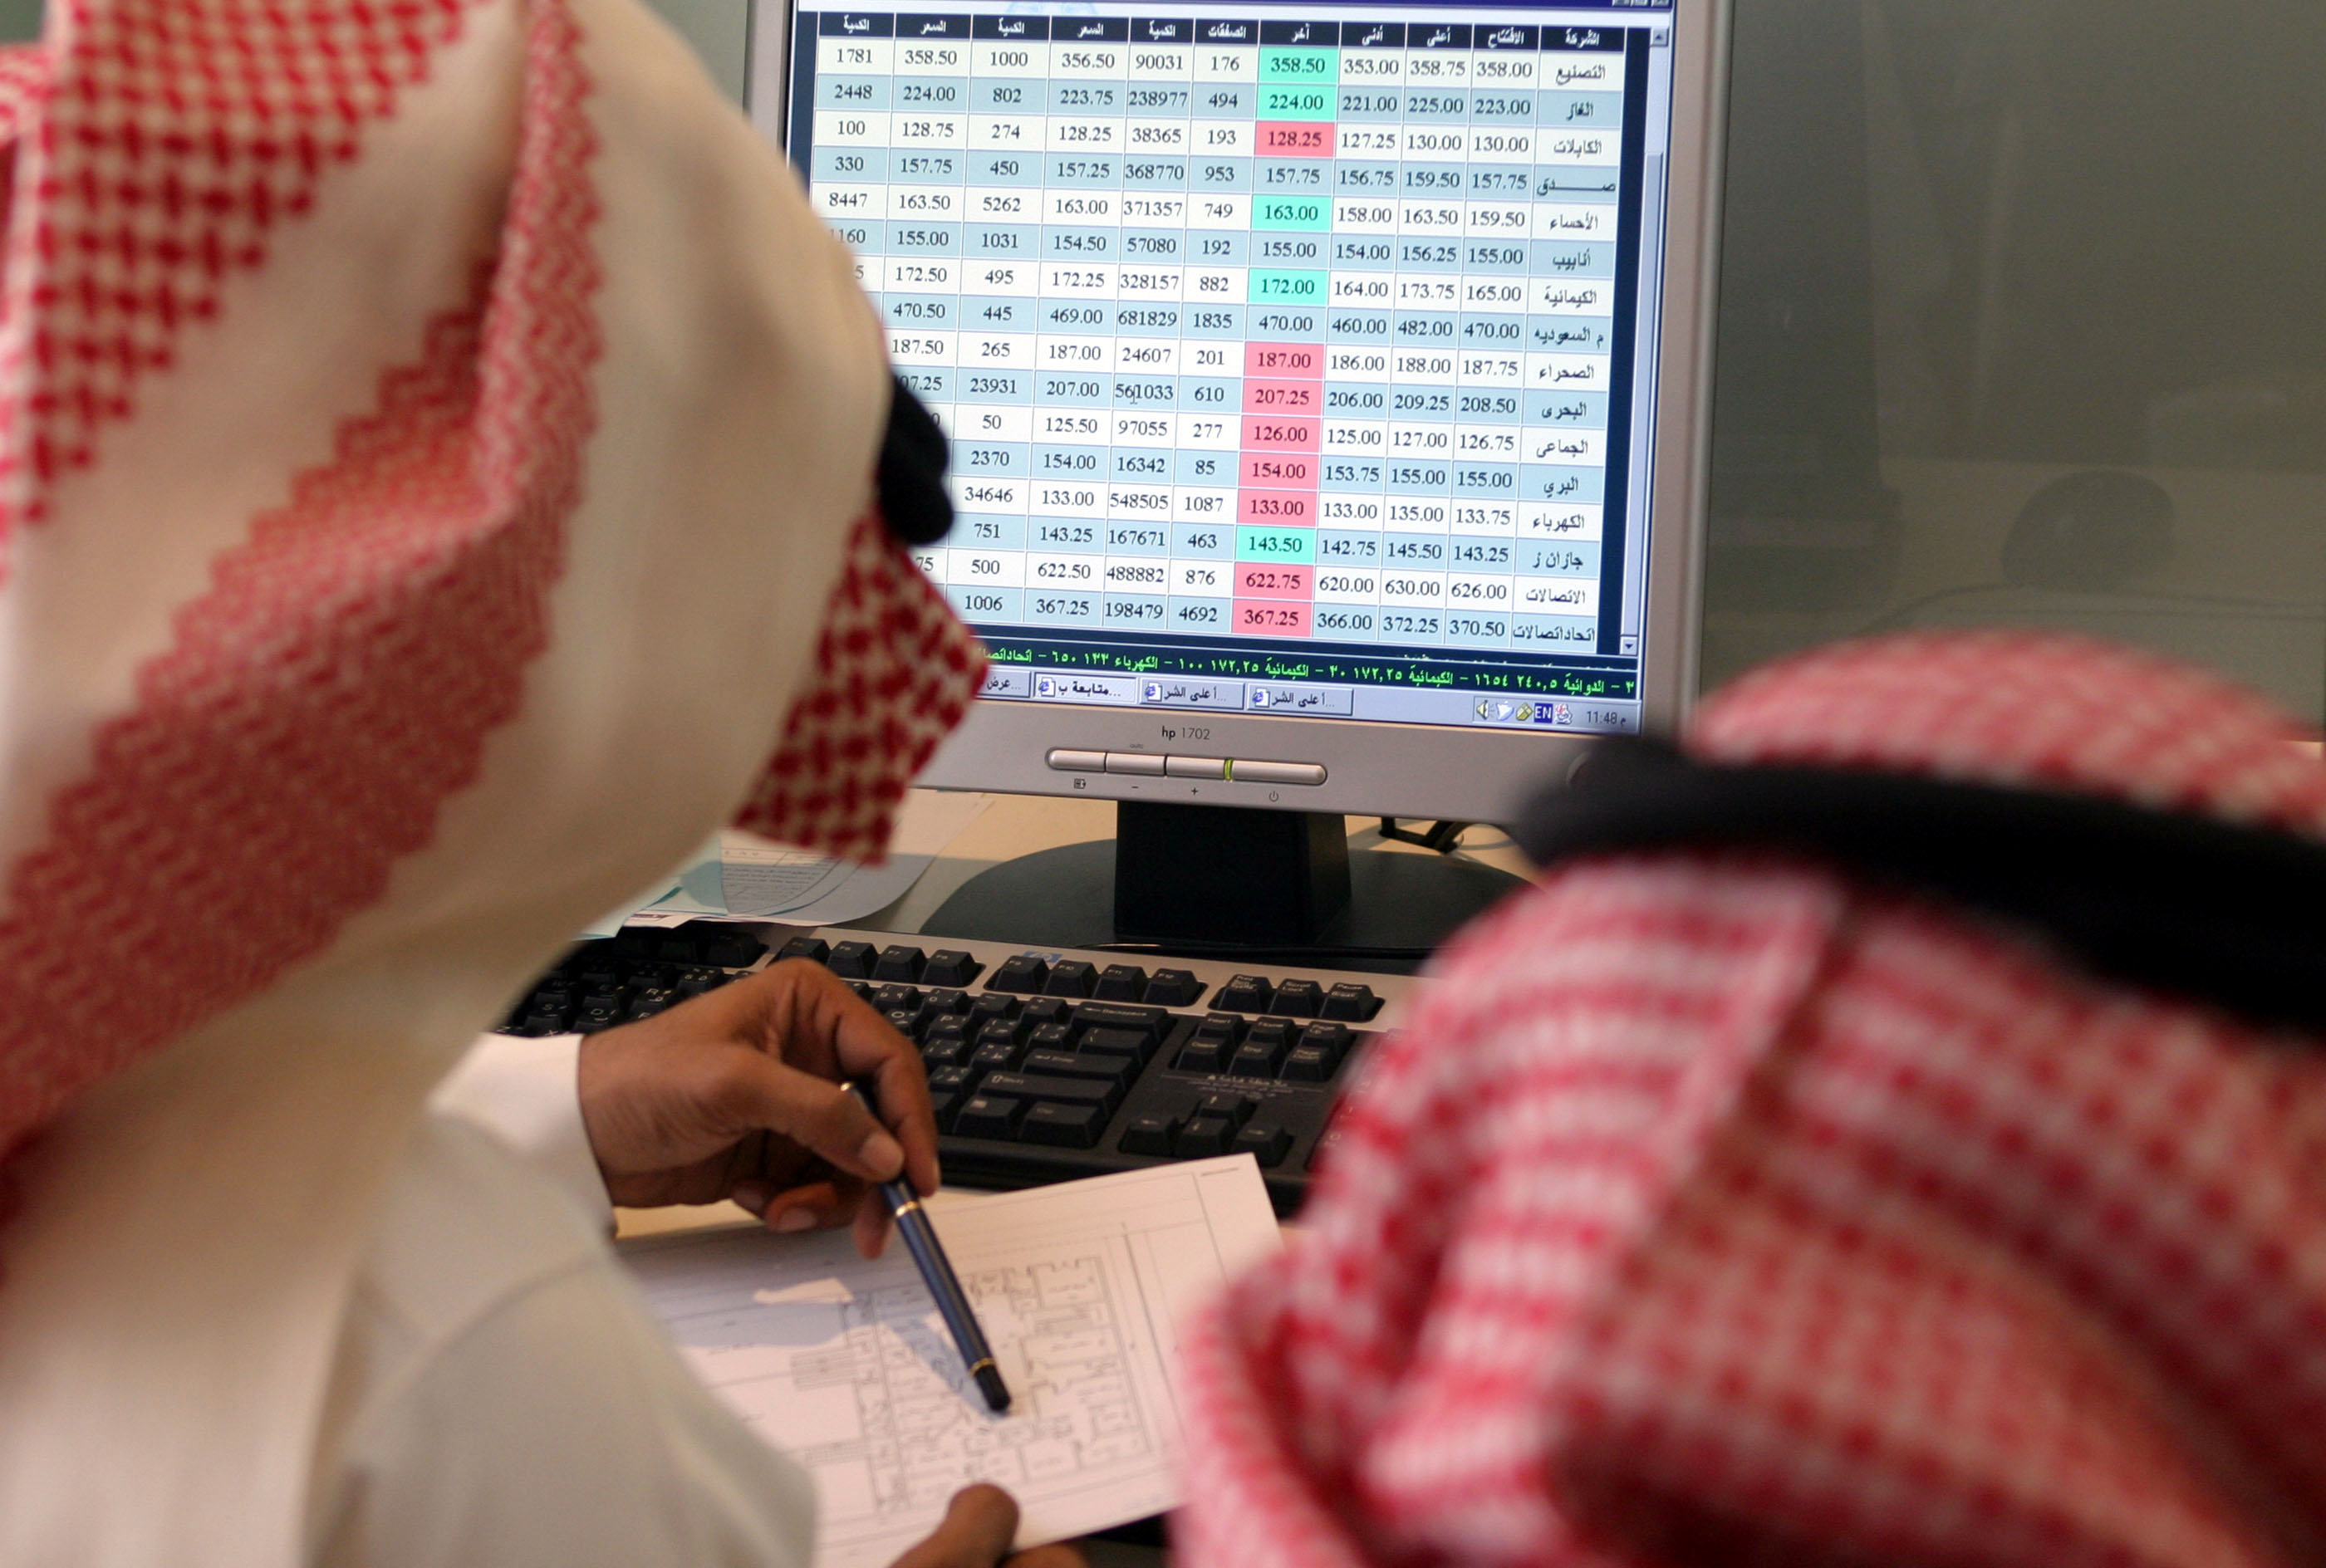  المؤشر السعودي يواصل تراجعه للجلسة الثانية على التوالي بنسبة 0.32%